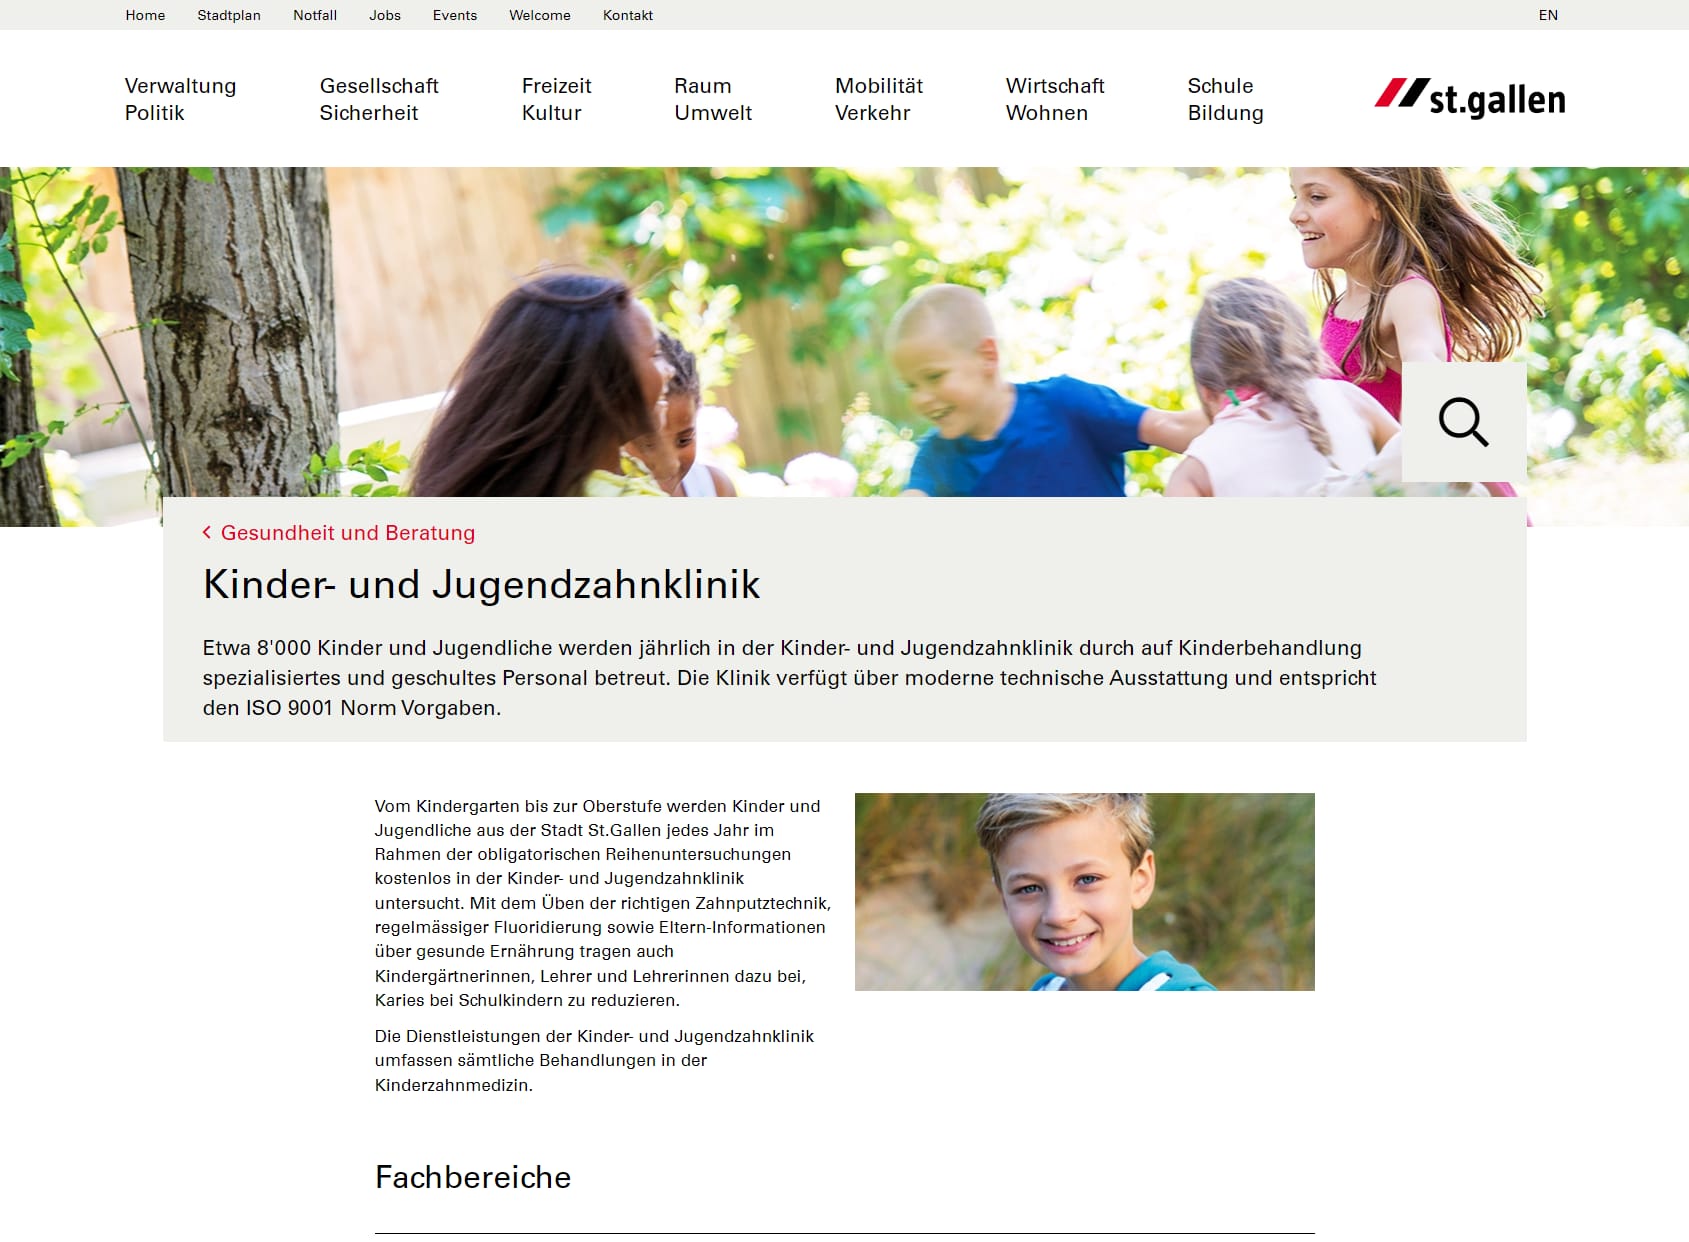 Stadt St.Gallen, Kinder- und Jugendzahnklinik